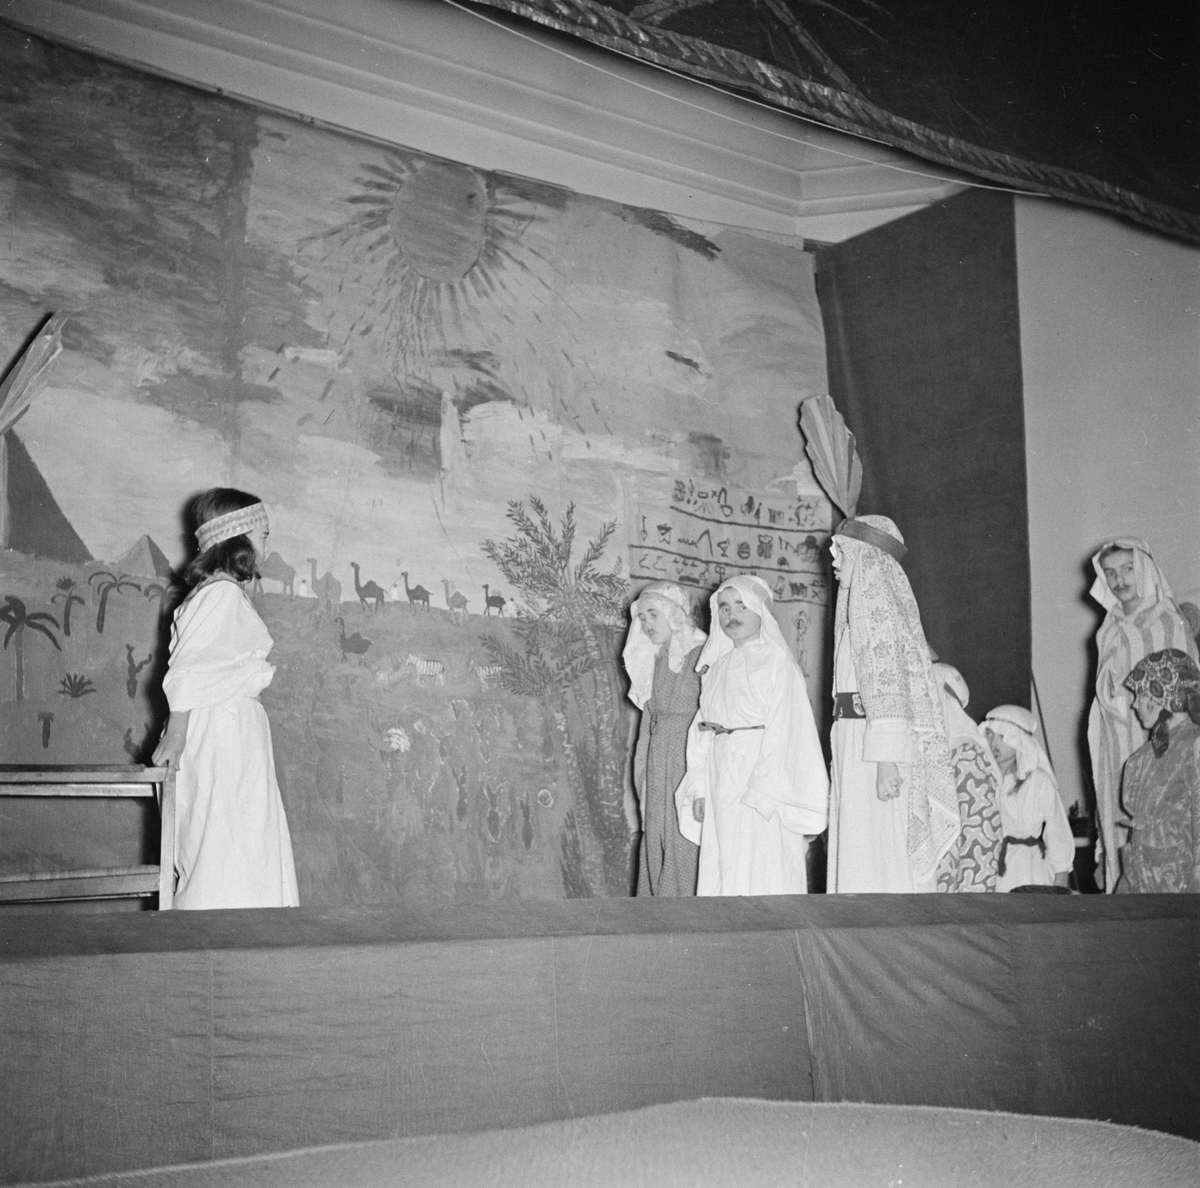 Folkskoleseminariet, "Josef i Egypten", Uppsala 1947